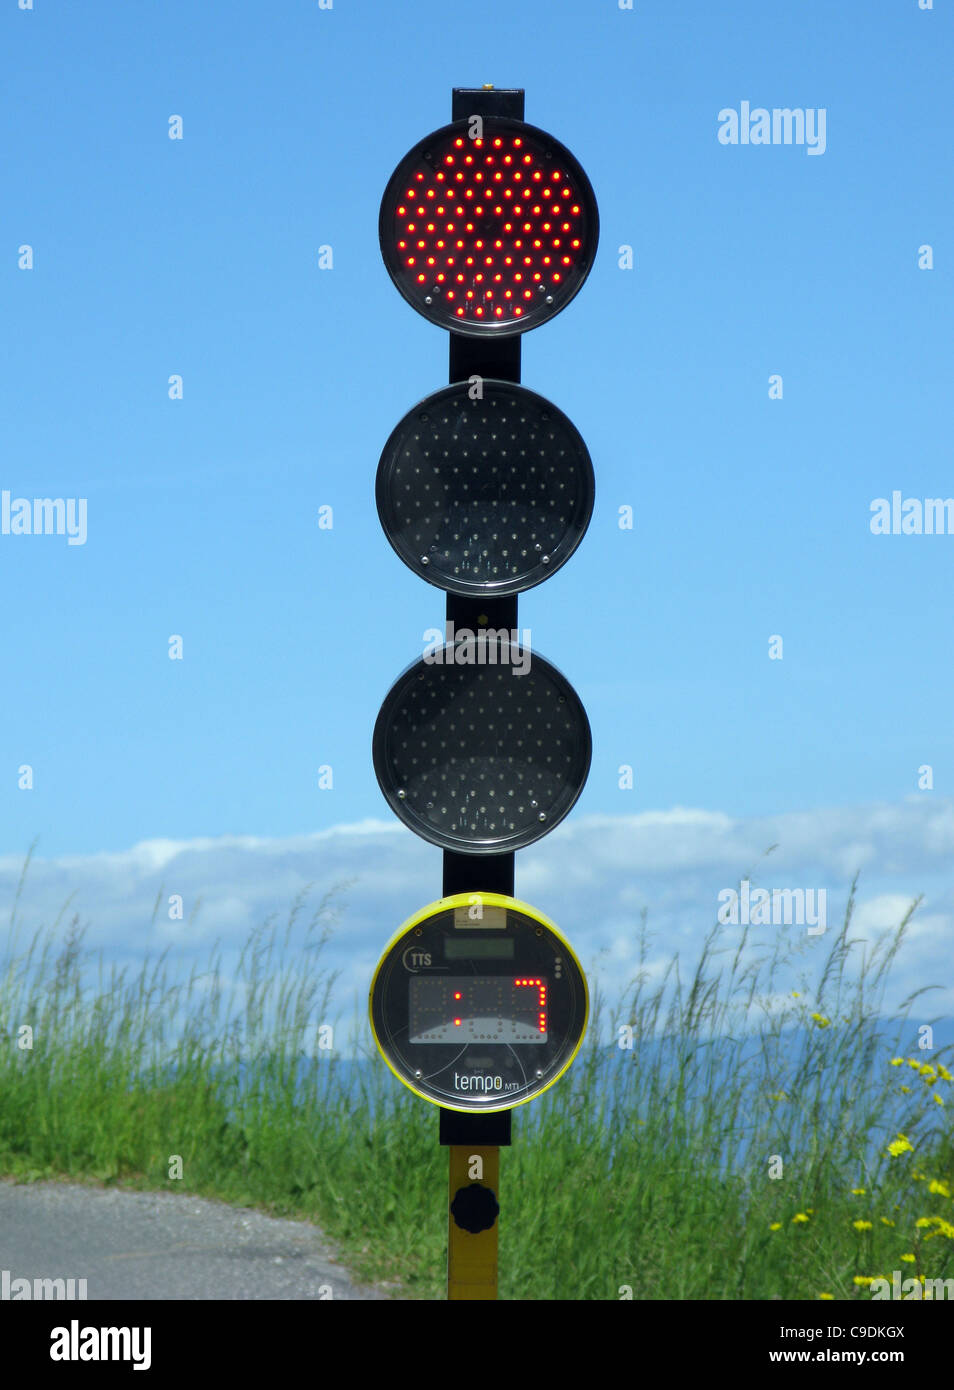 Semaforo con timer con conto alla rovescia display per mostrare quando la luce si modifica. Foto Stock